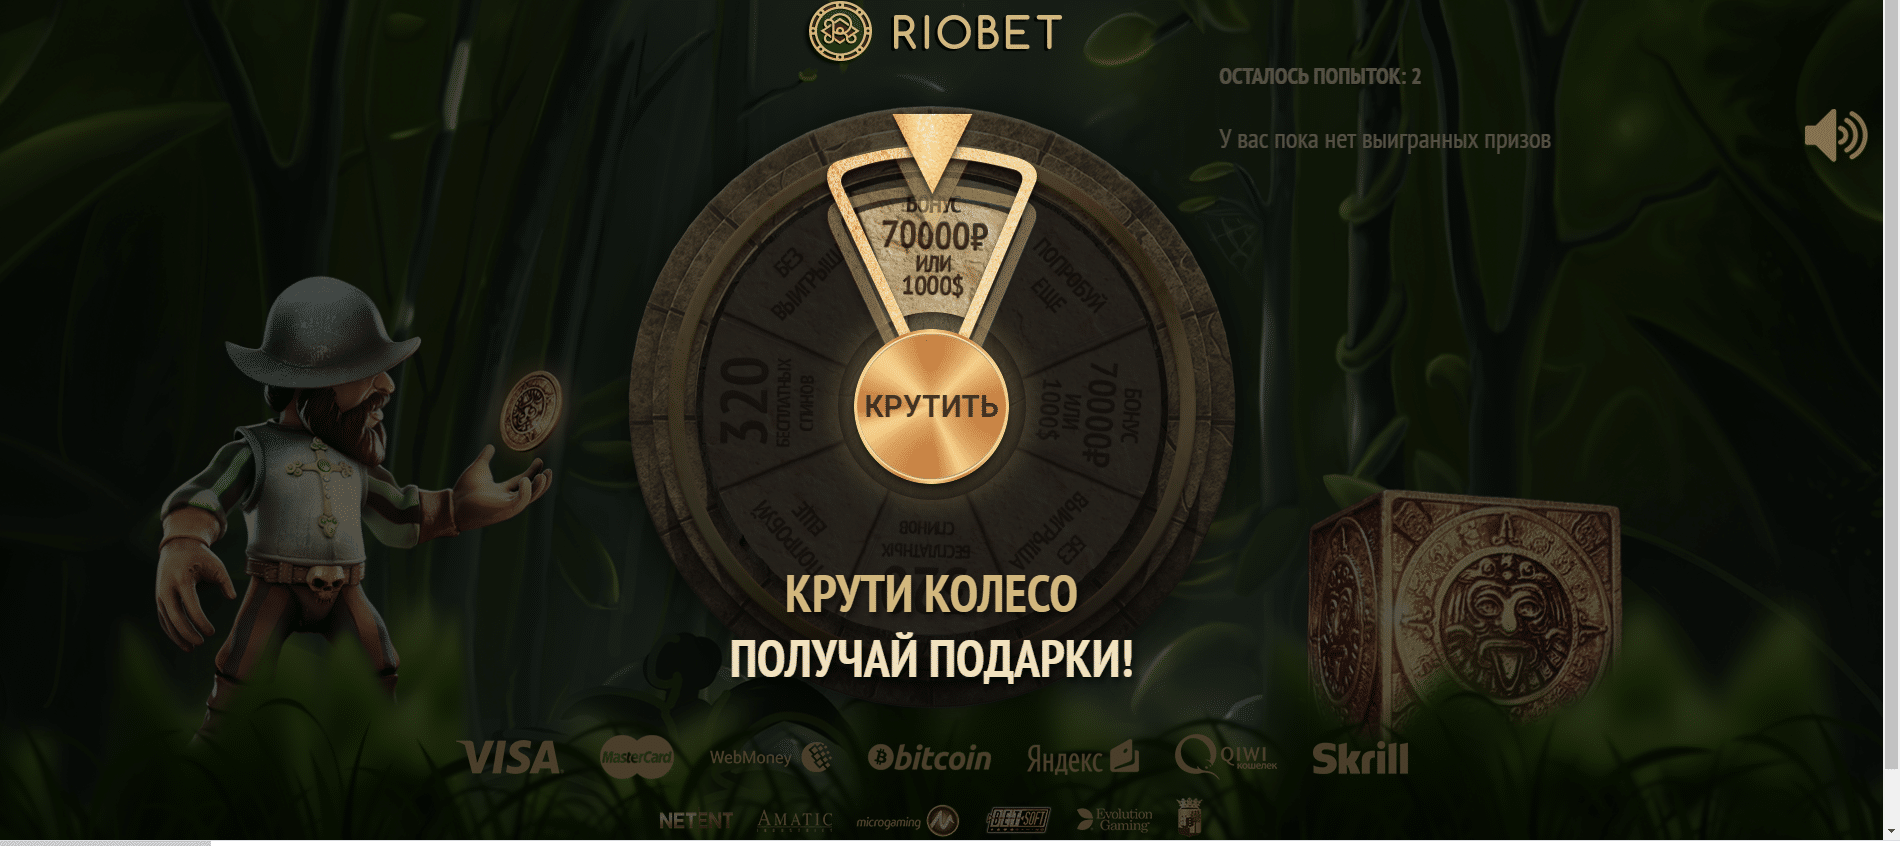 Riobet игра с минимальной ставкой riobetpayrf. Риобет казино. Логотип Риобет. Сайт казино RIOBET. Риобет 77.com.